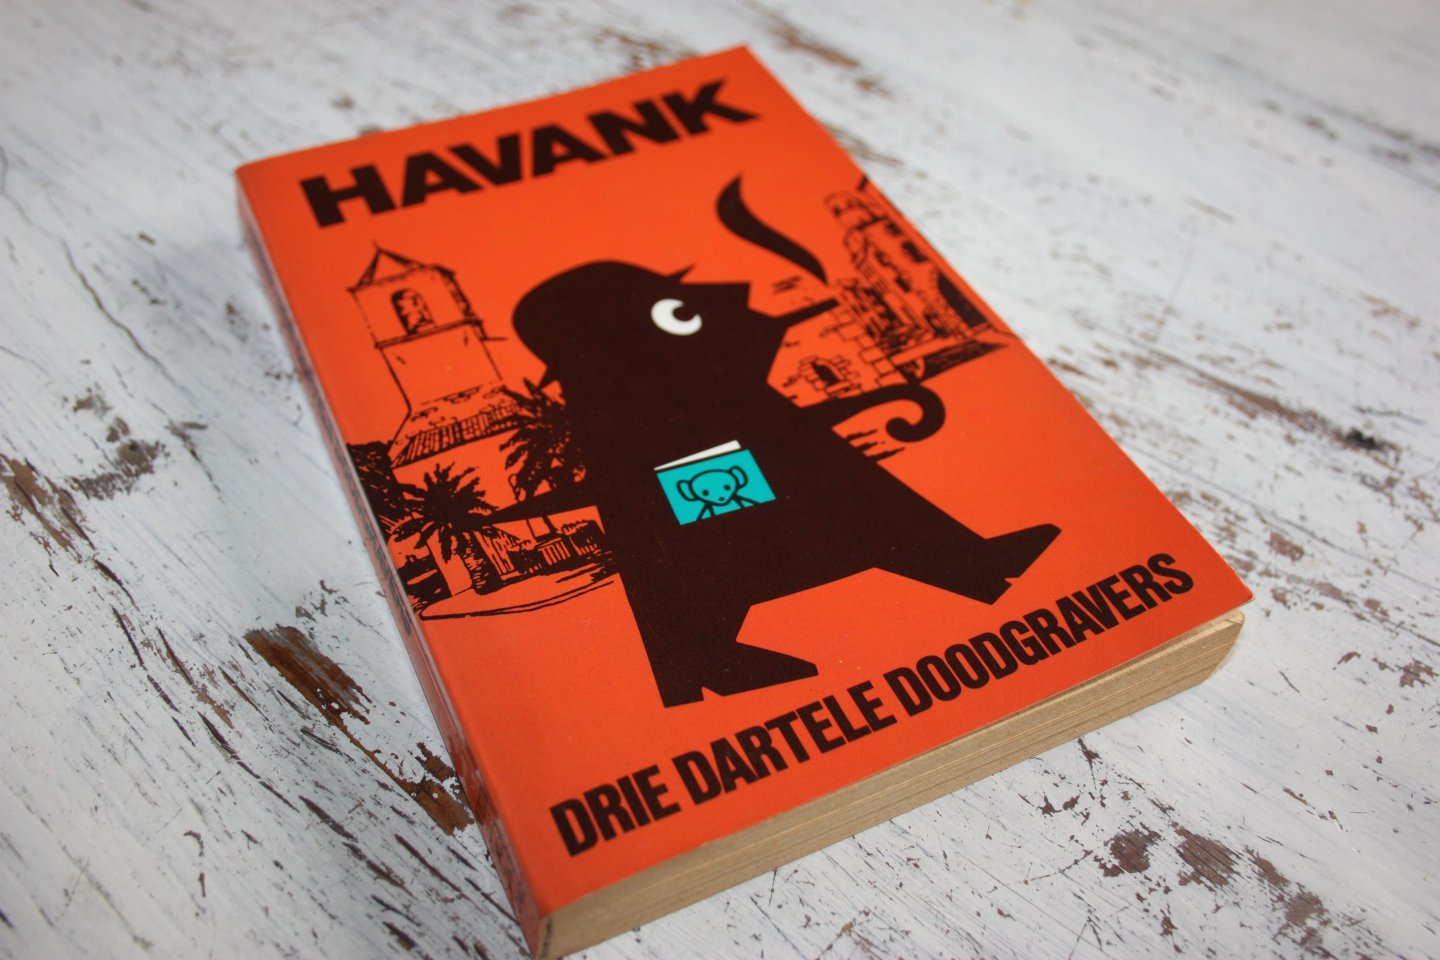 Havank - DRIE DARTELE DOODGRAVERS